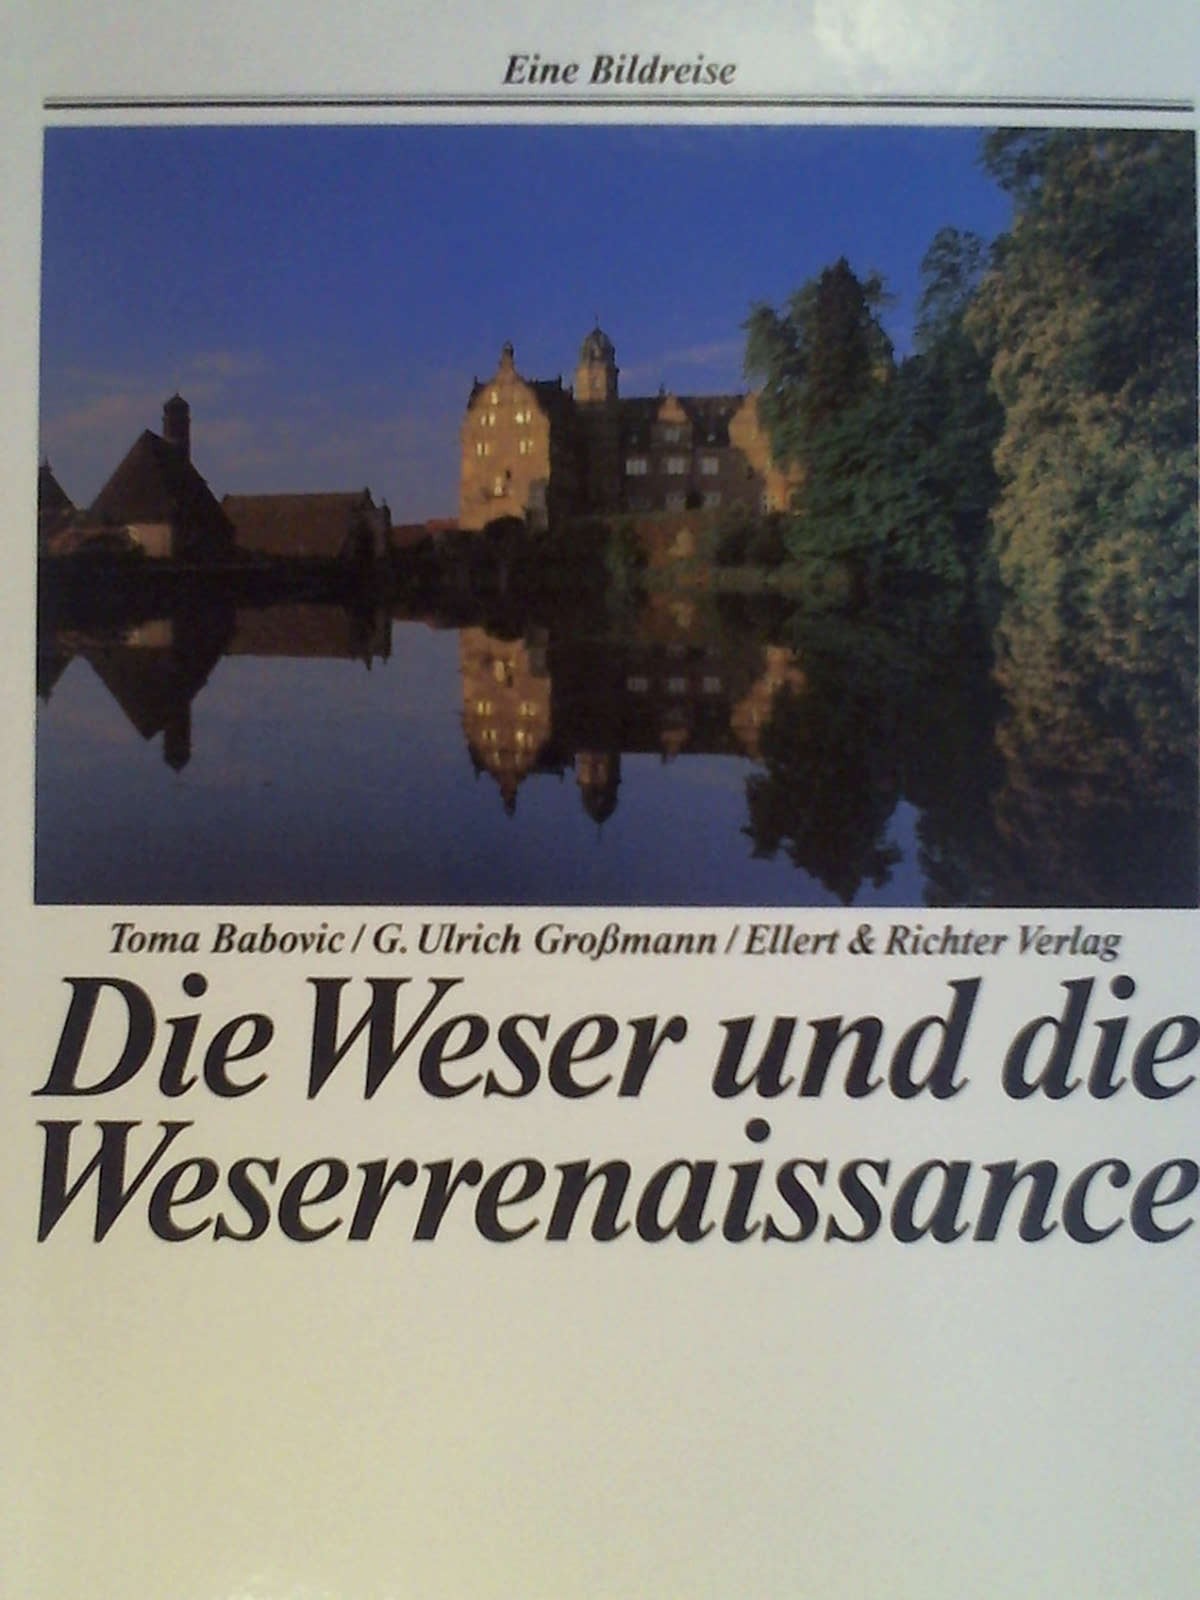 Die Weser und die Weserrenaissance. Ein Bildreise. - Toma Babovic